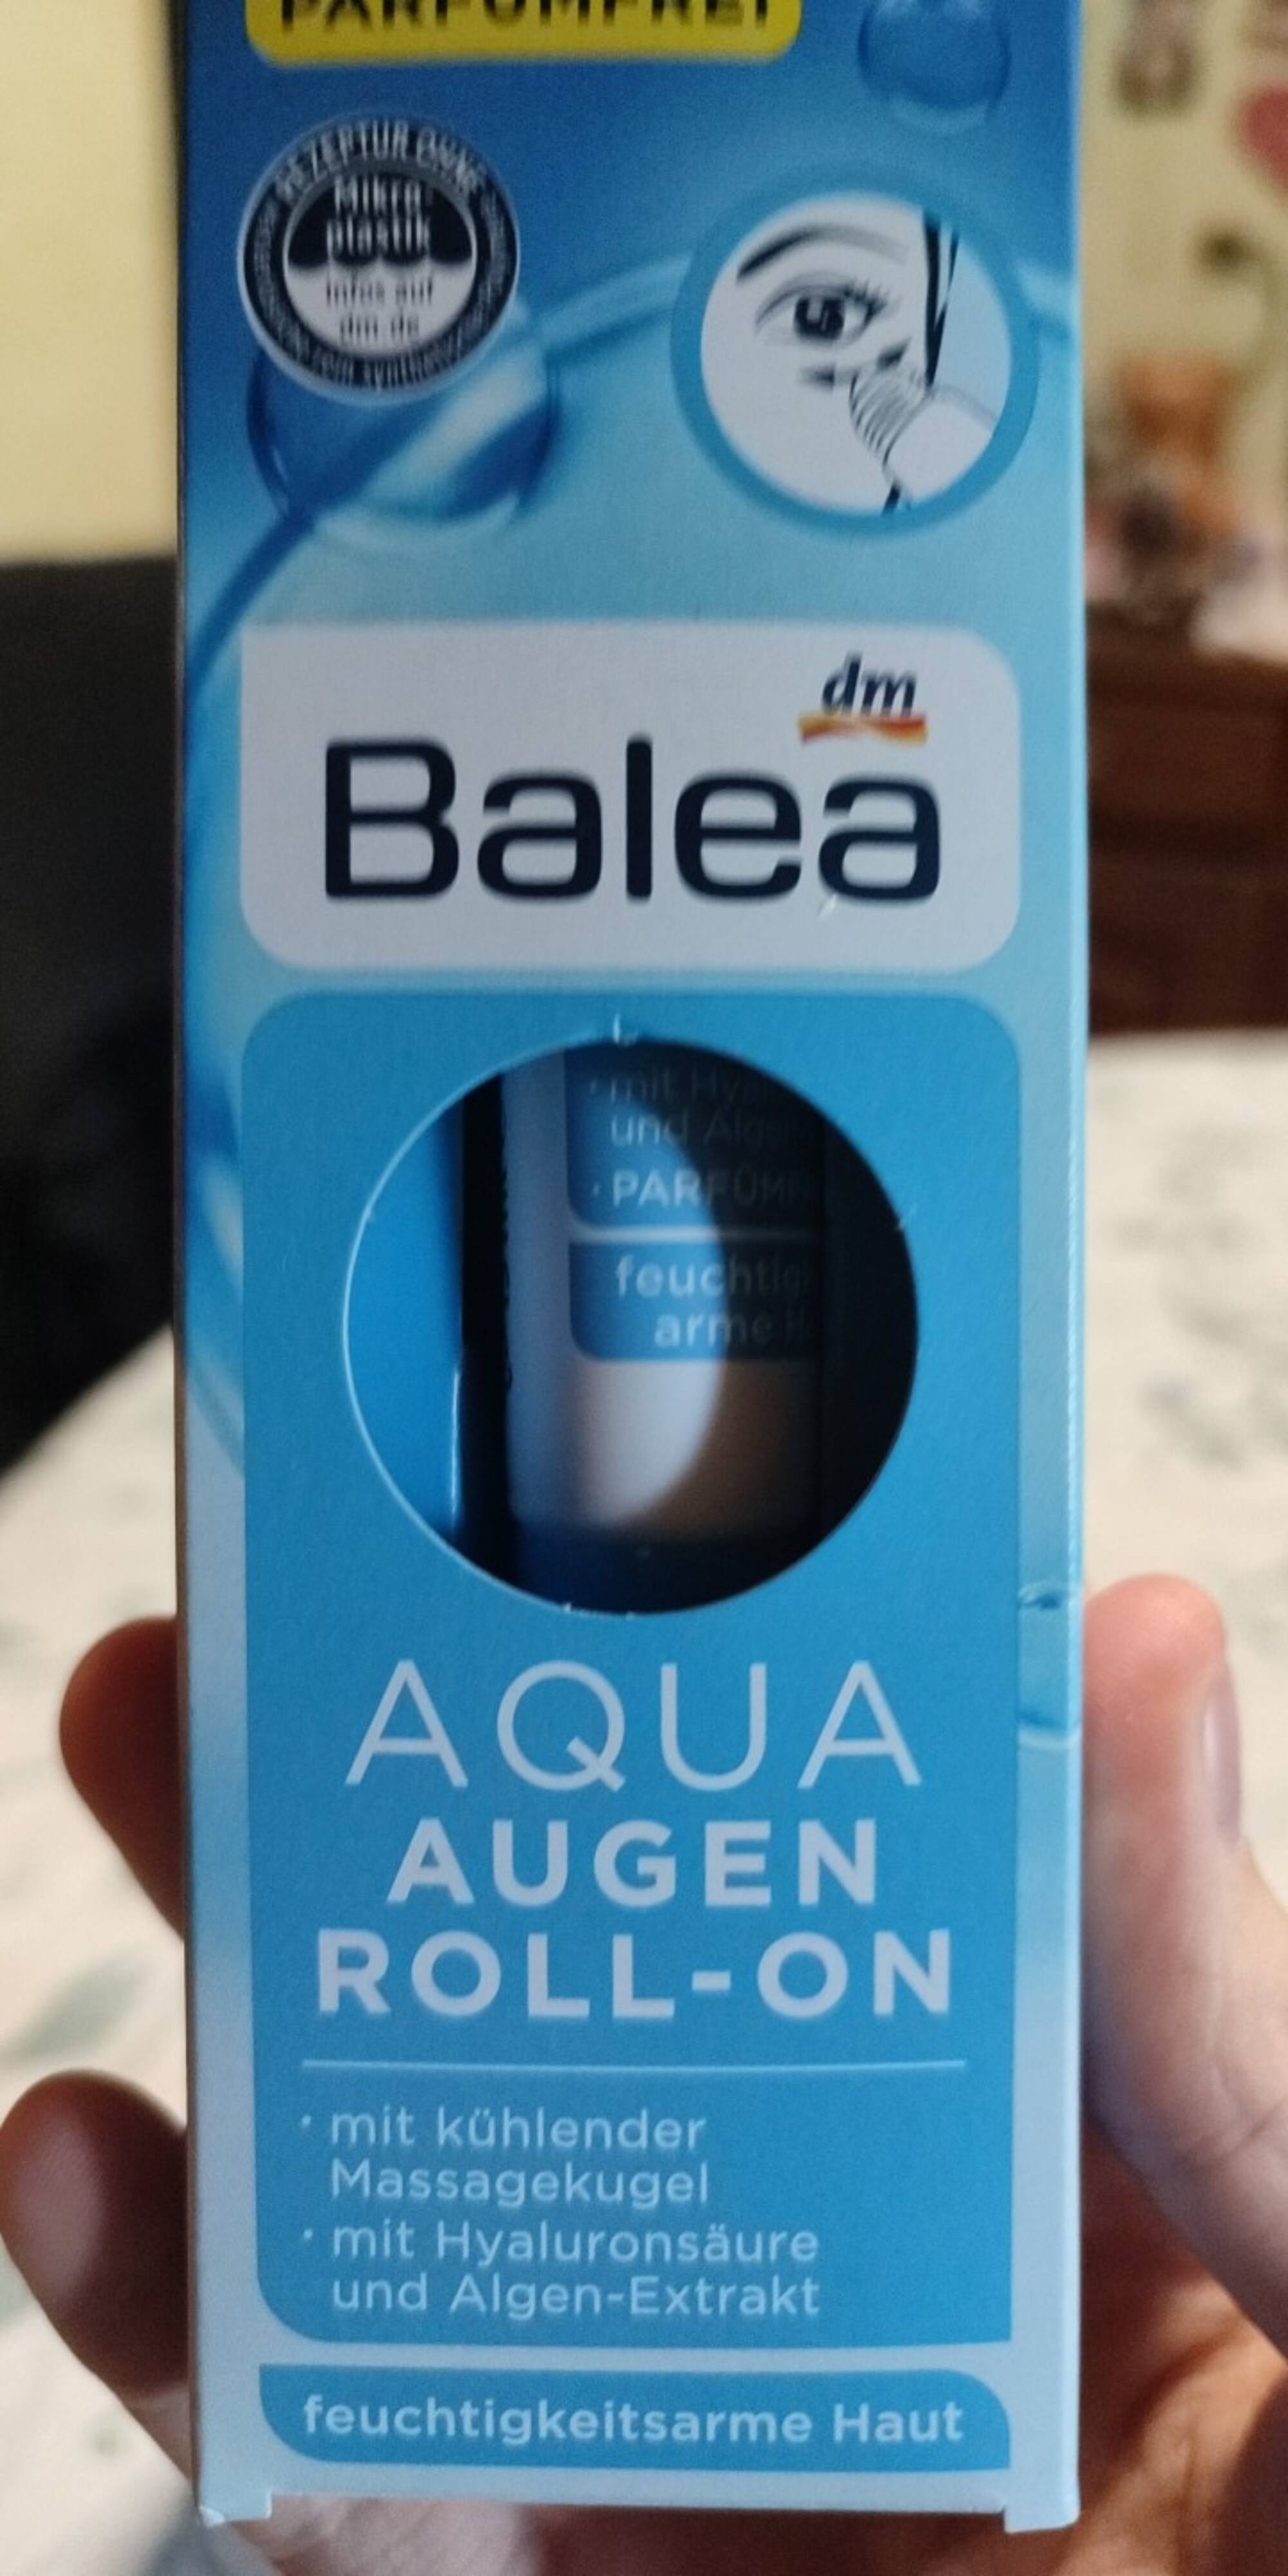 BALEA DM - Aqua augen roll-on